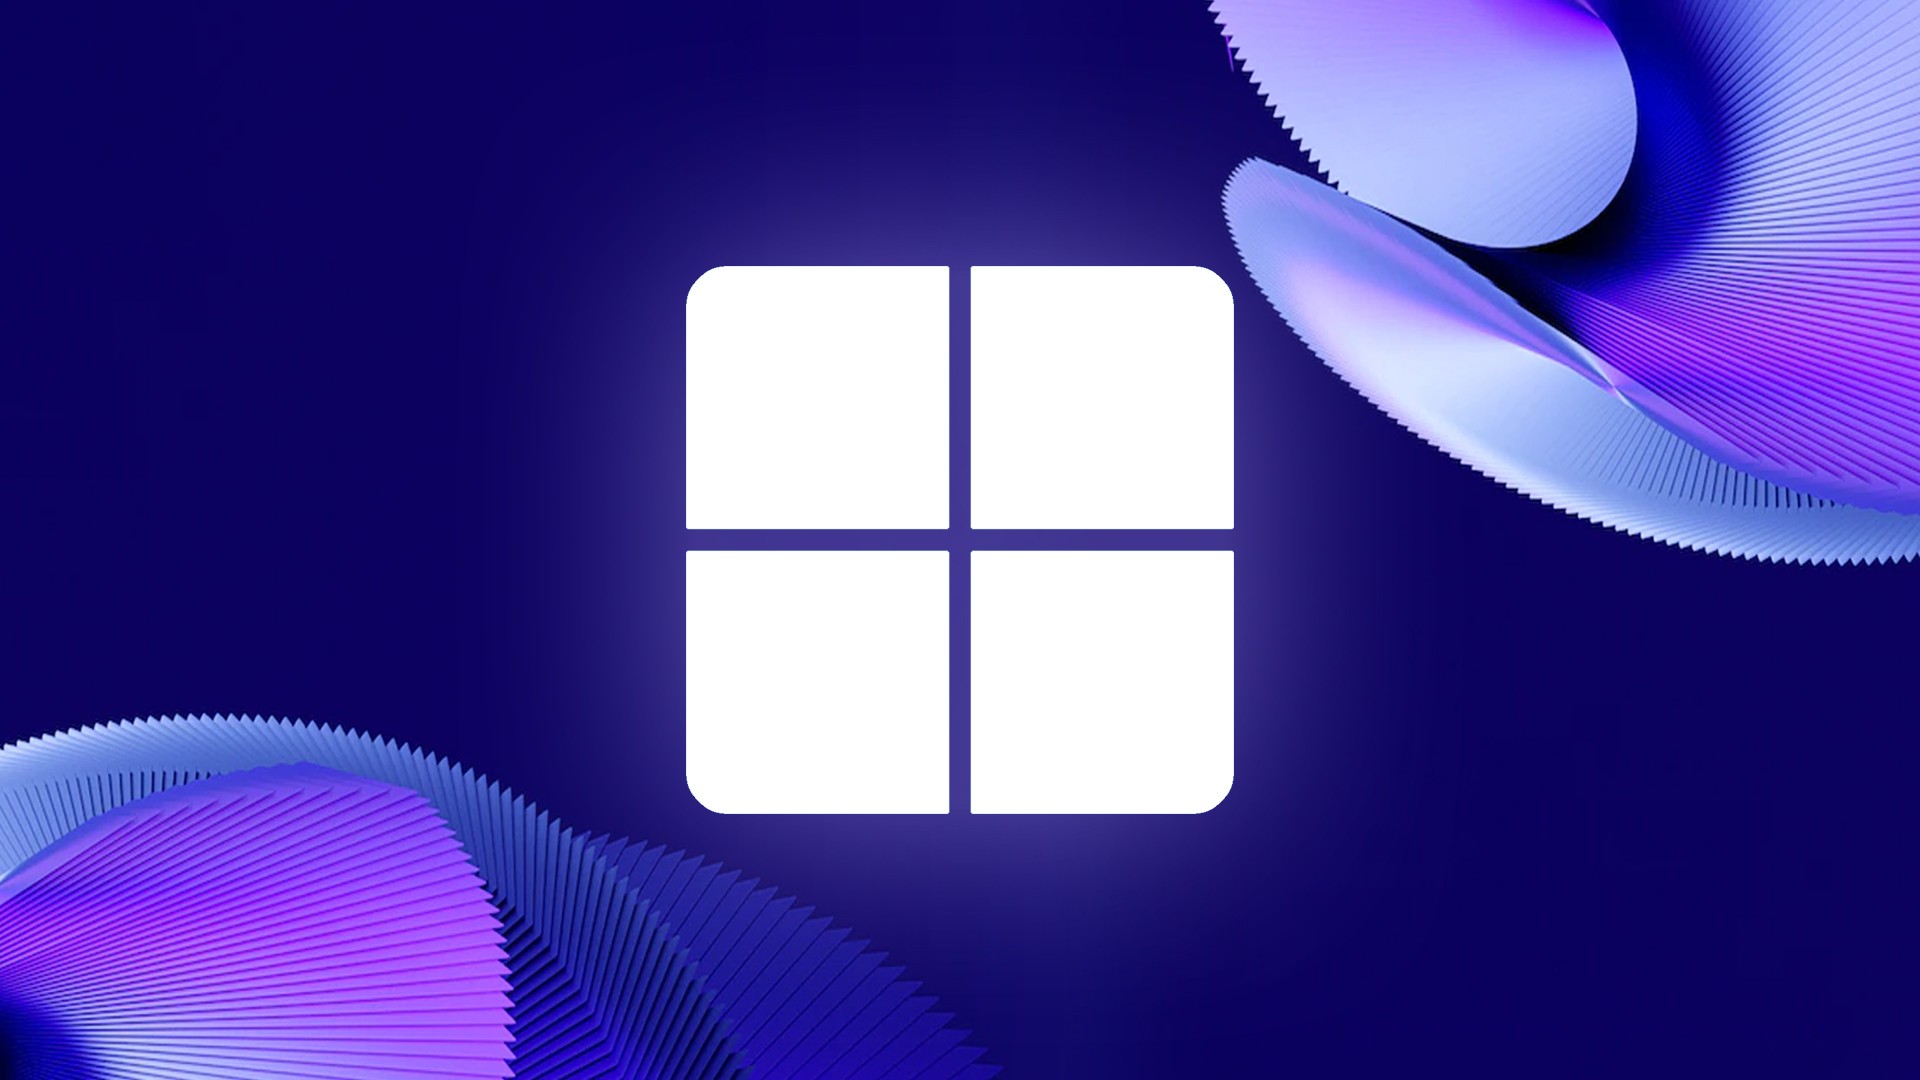 Ativador Windows 11 Download Grátis Português PT-BR 2023